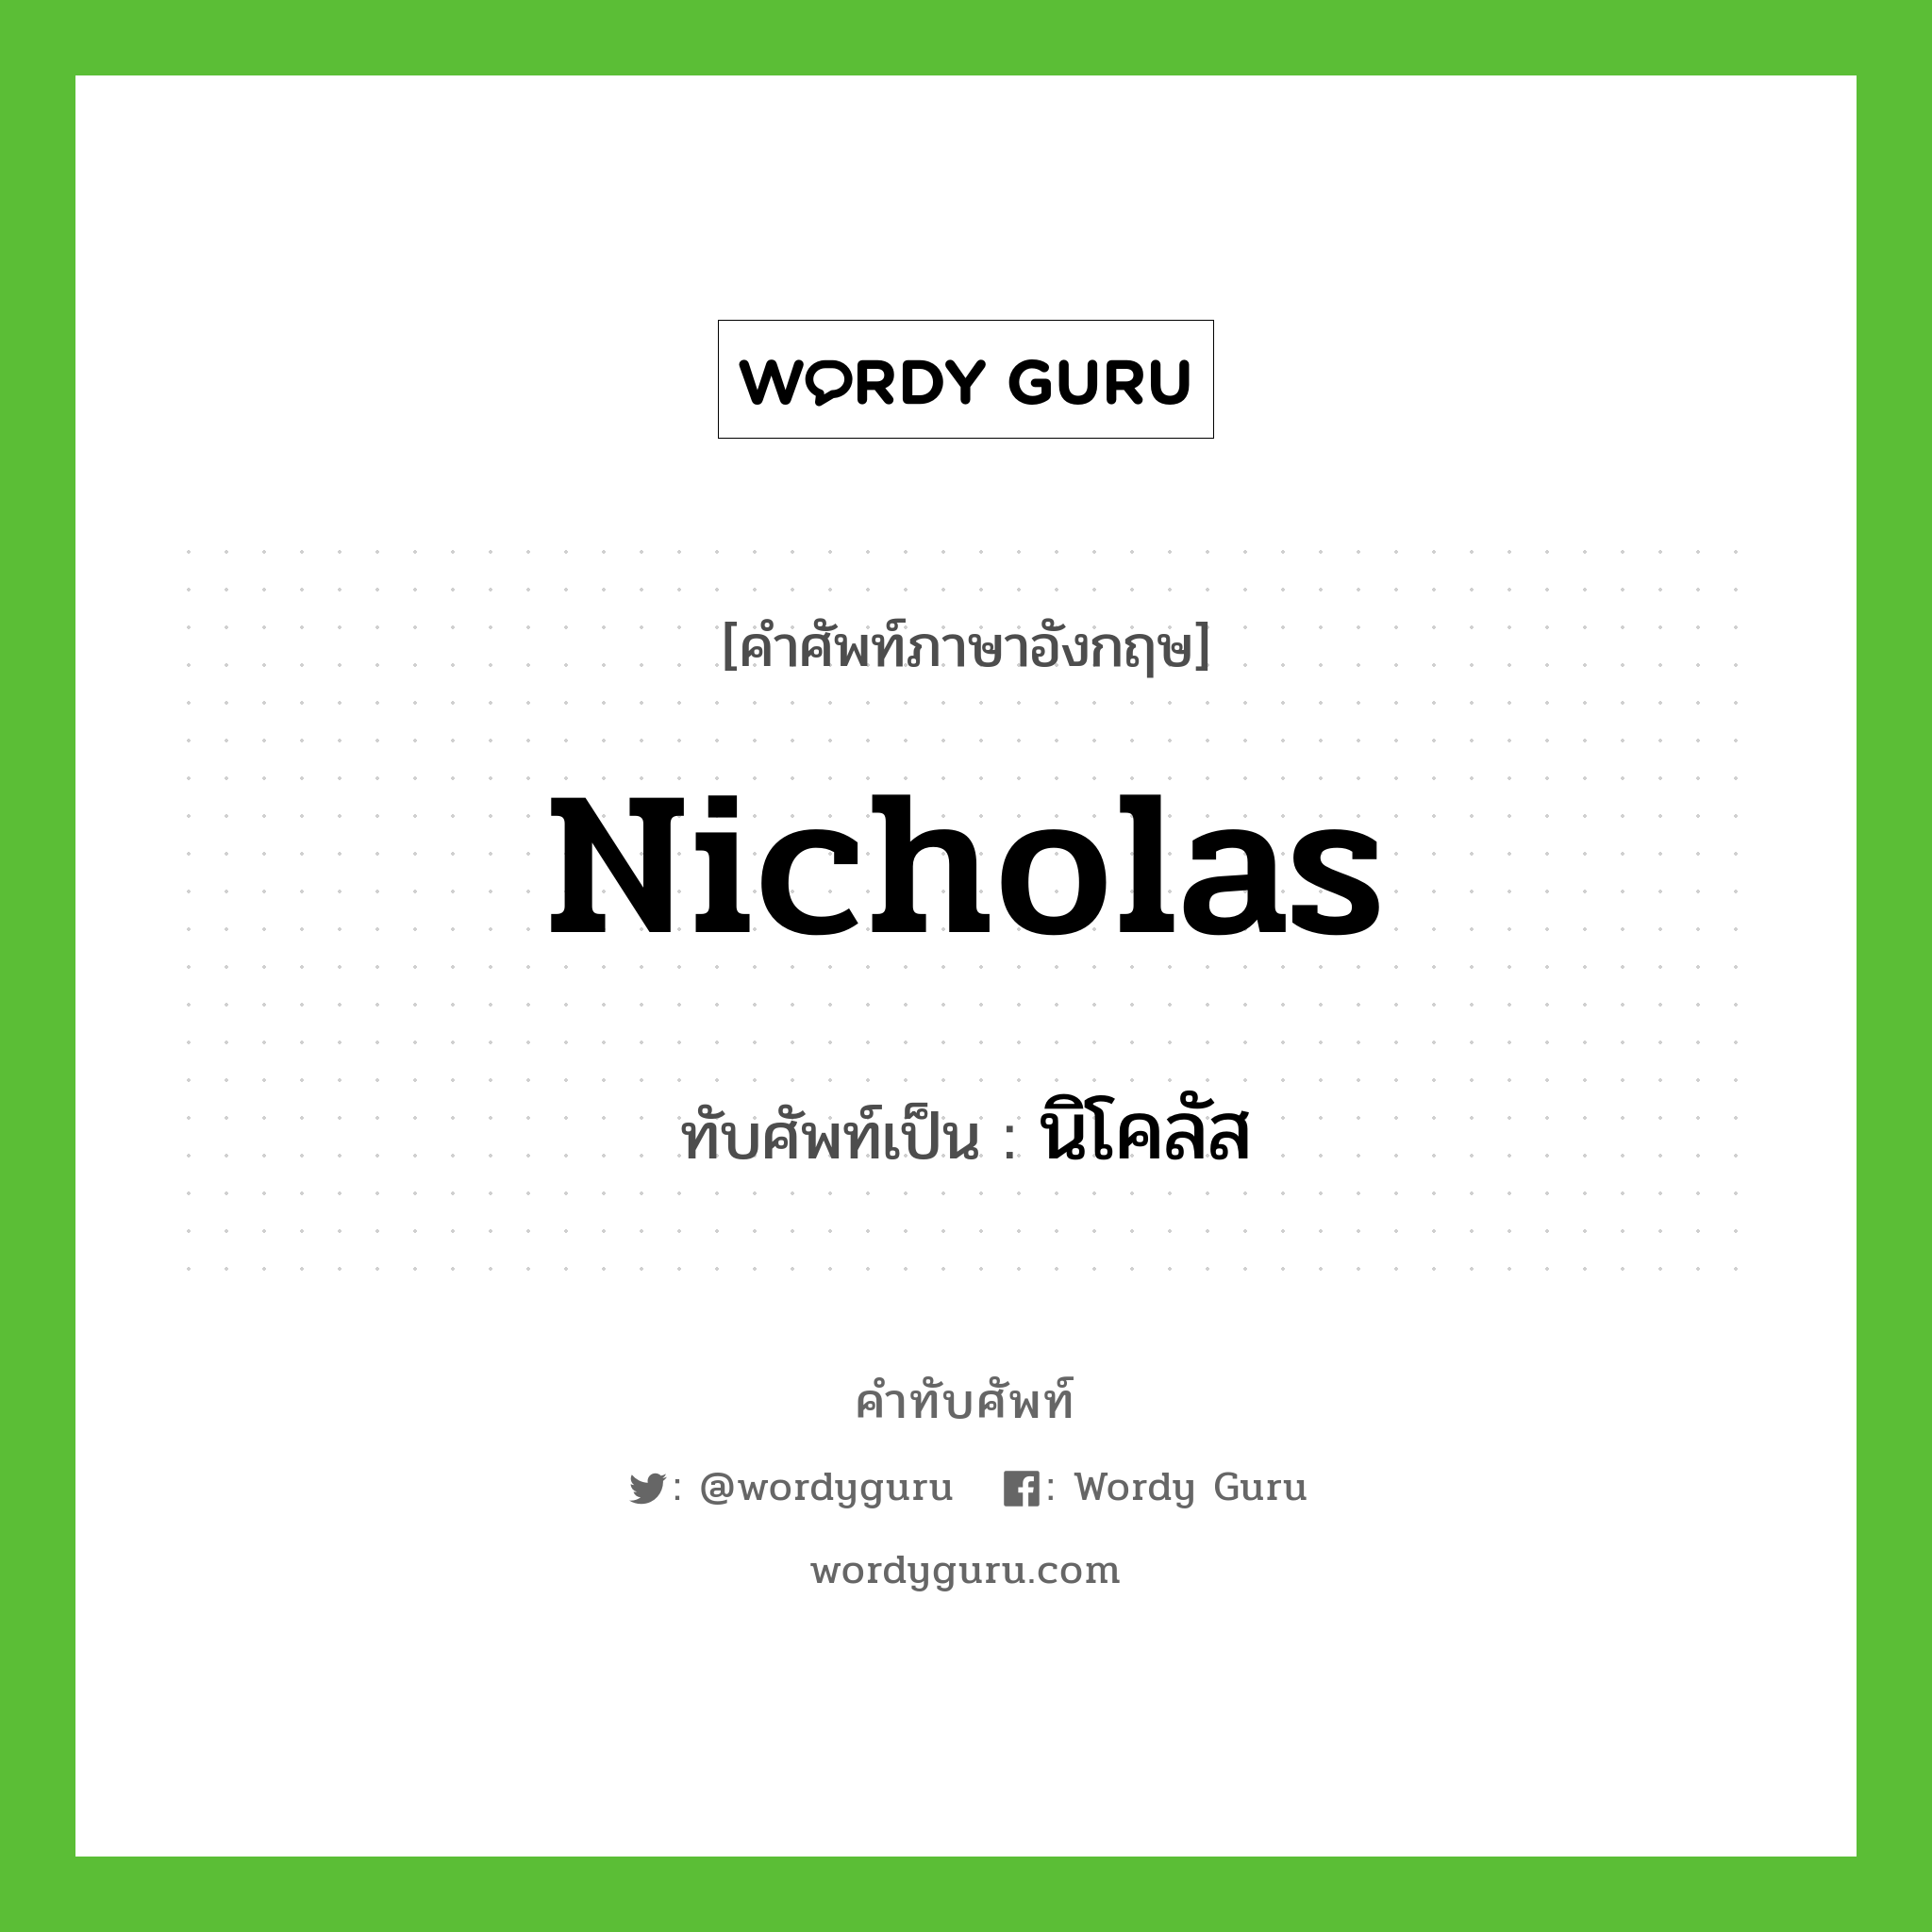 นิโคลัส เขียนอย่างไร?, คำศัพท์ภาษาอังกฤษ นิโคลัส ทับศัพท์เป็น Nicholas